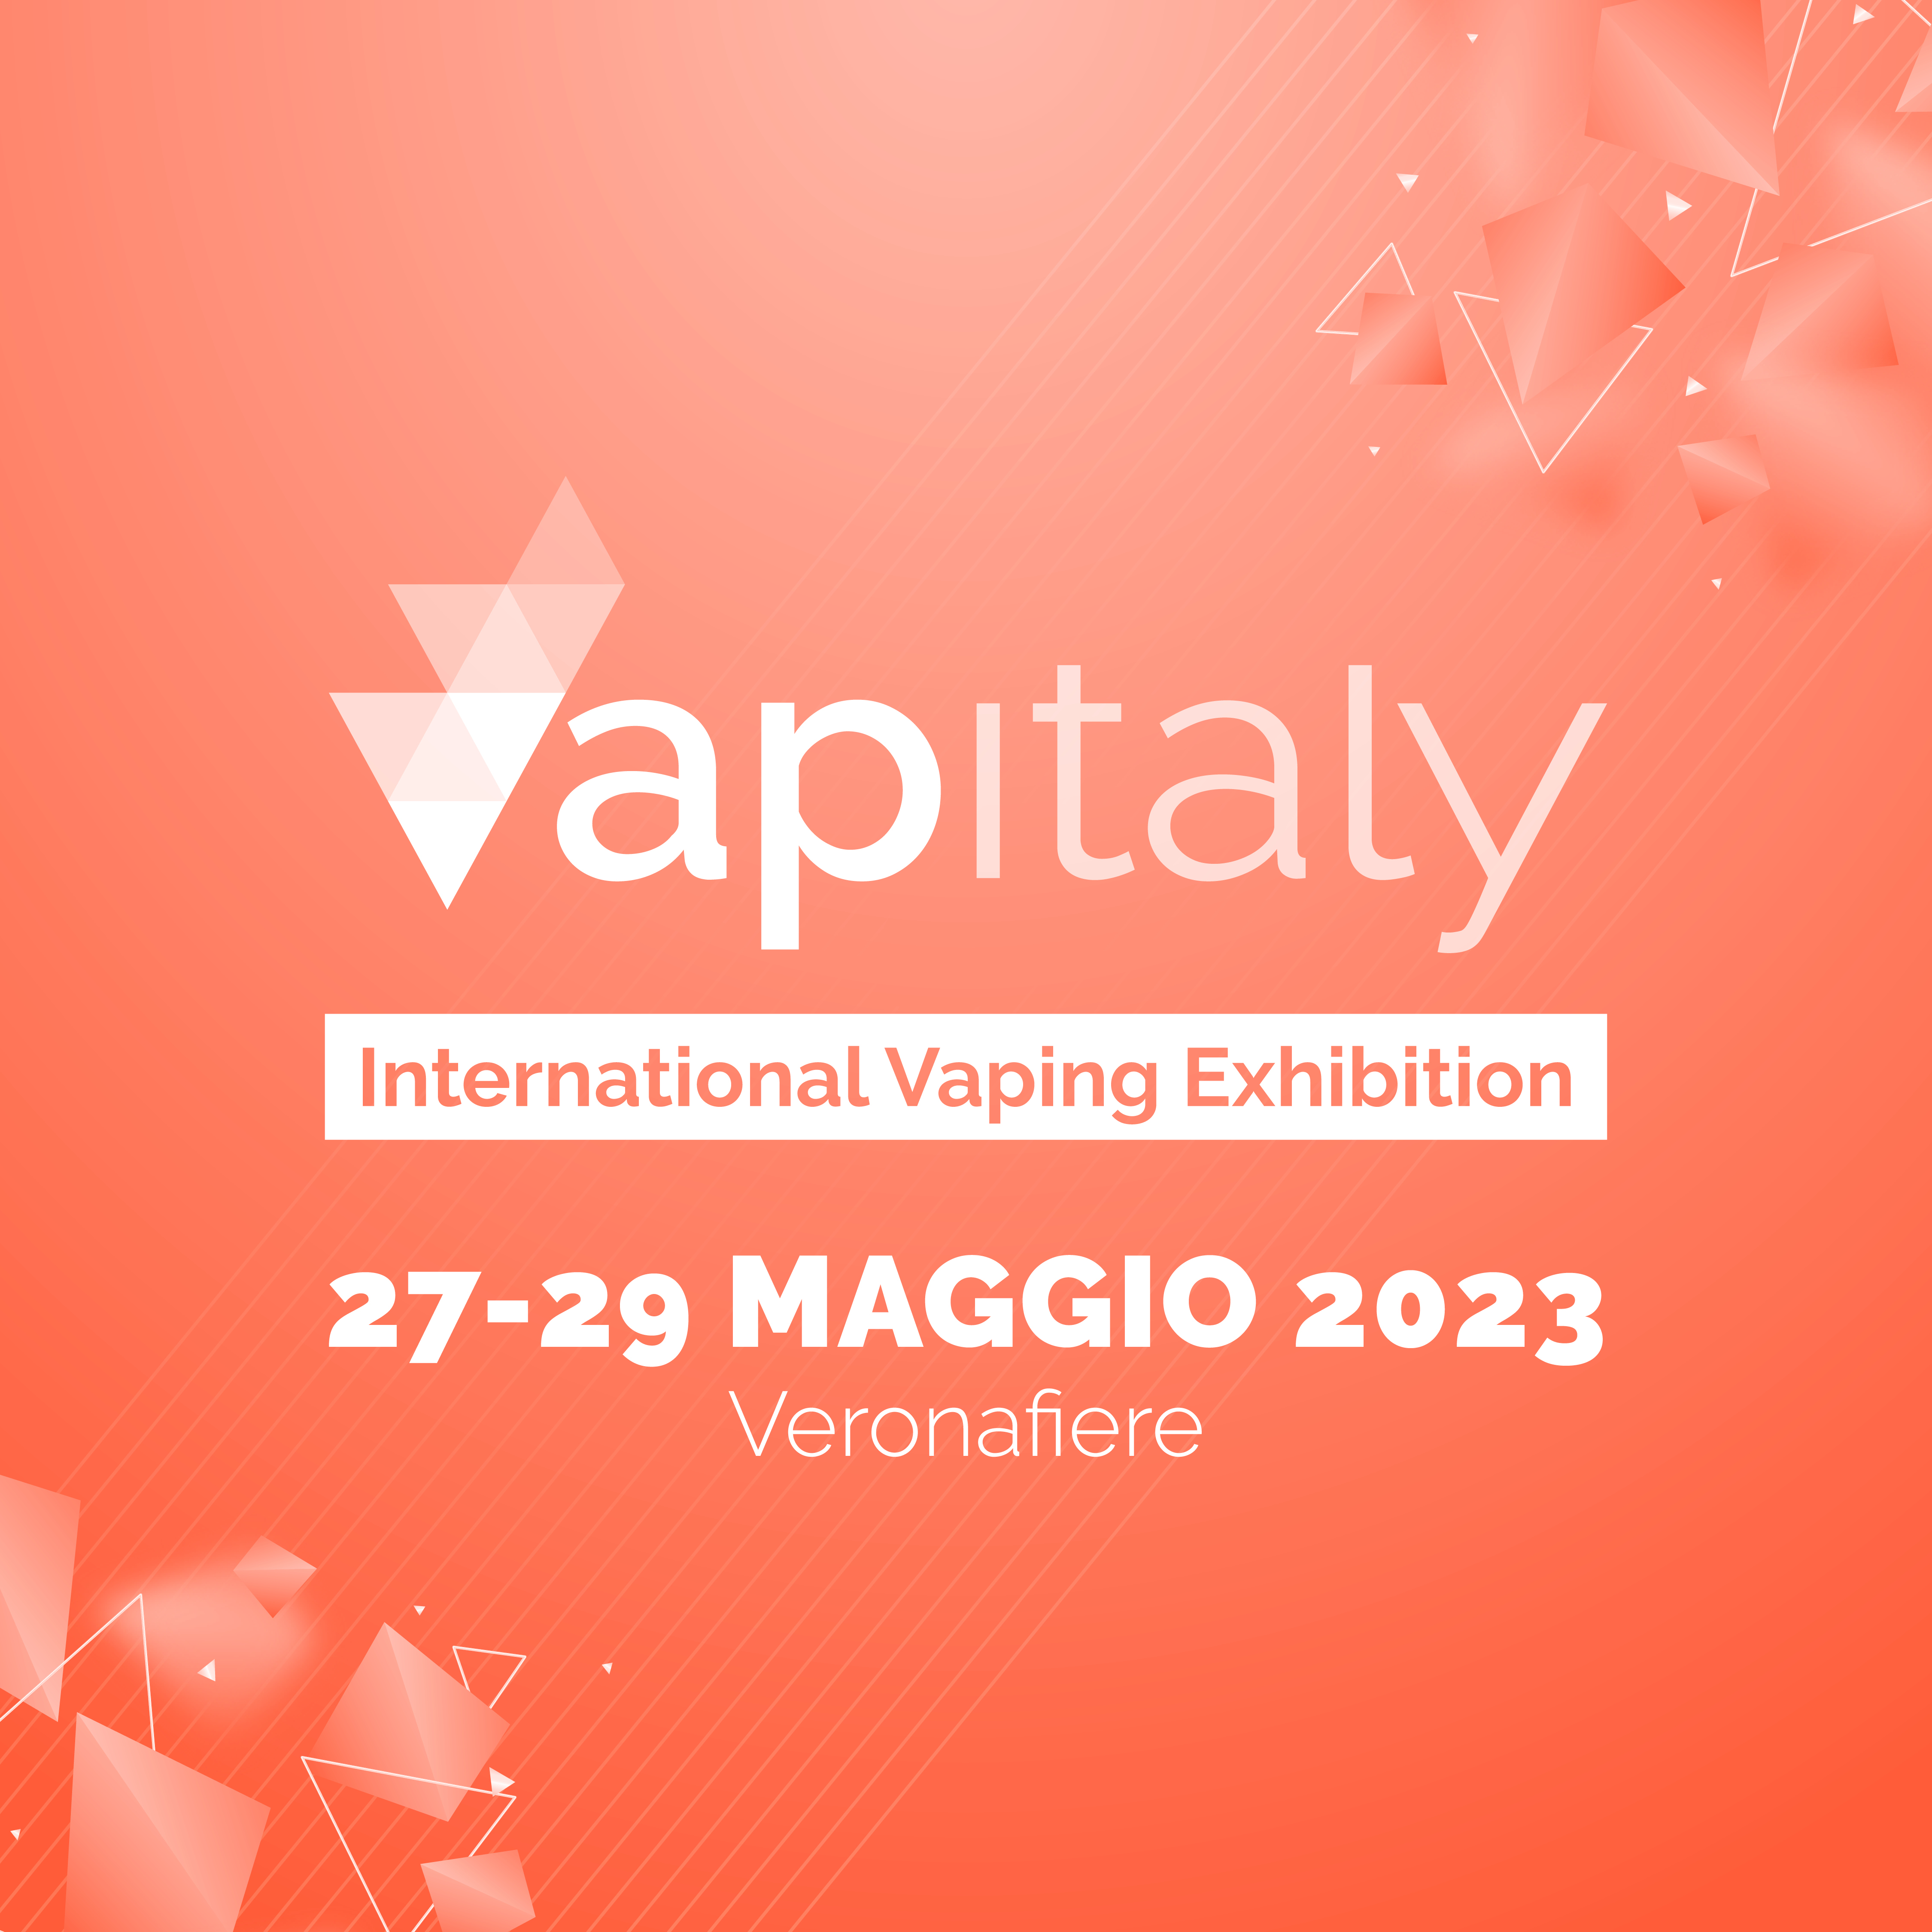 Il più grande evento mondiale del vaping. A Verona, dal 27 al 29 maggio 2023. Siglato l’accordo tra Vapitaly e l’Expo Cinese IECIE